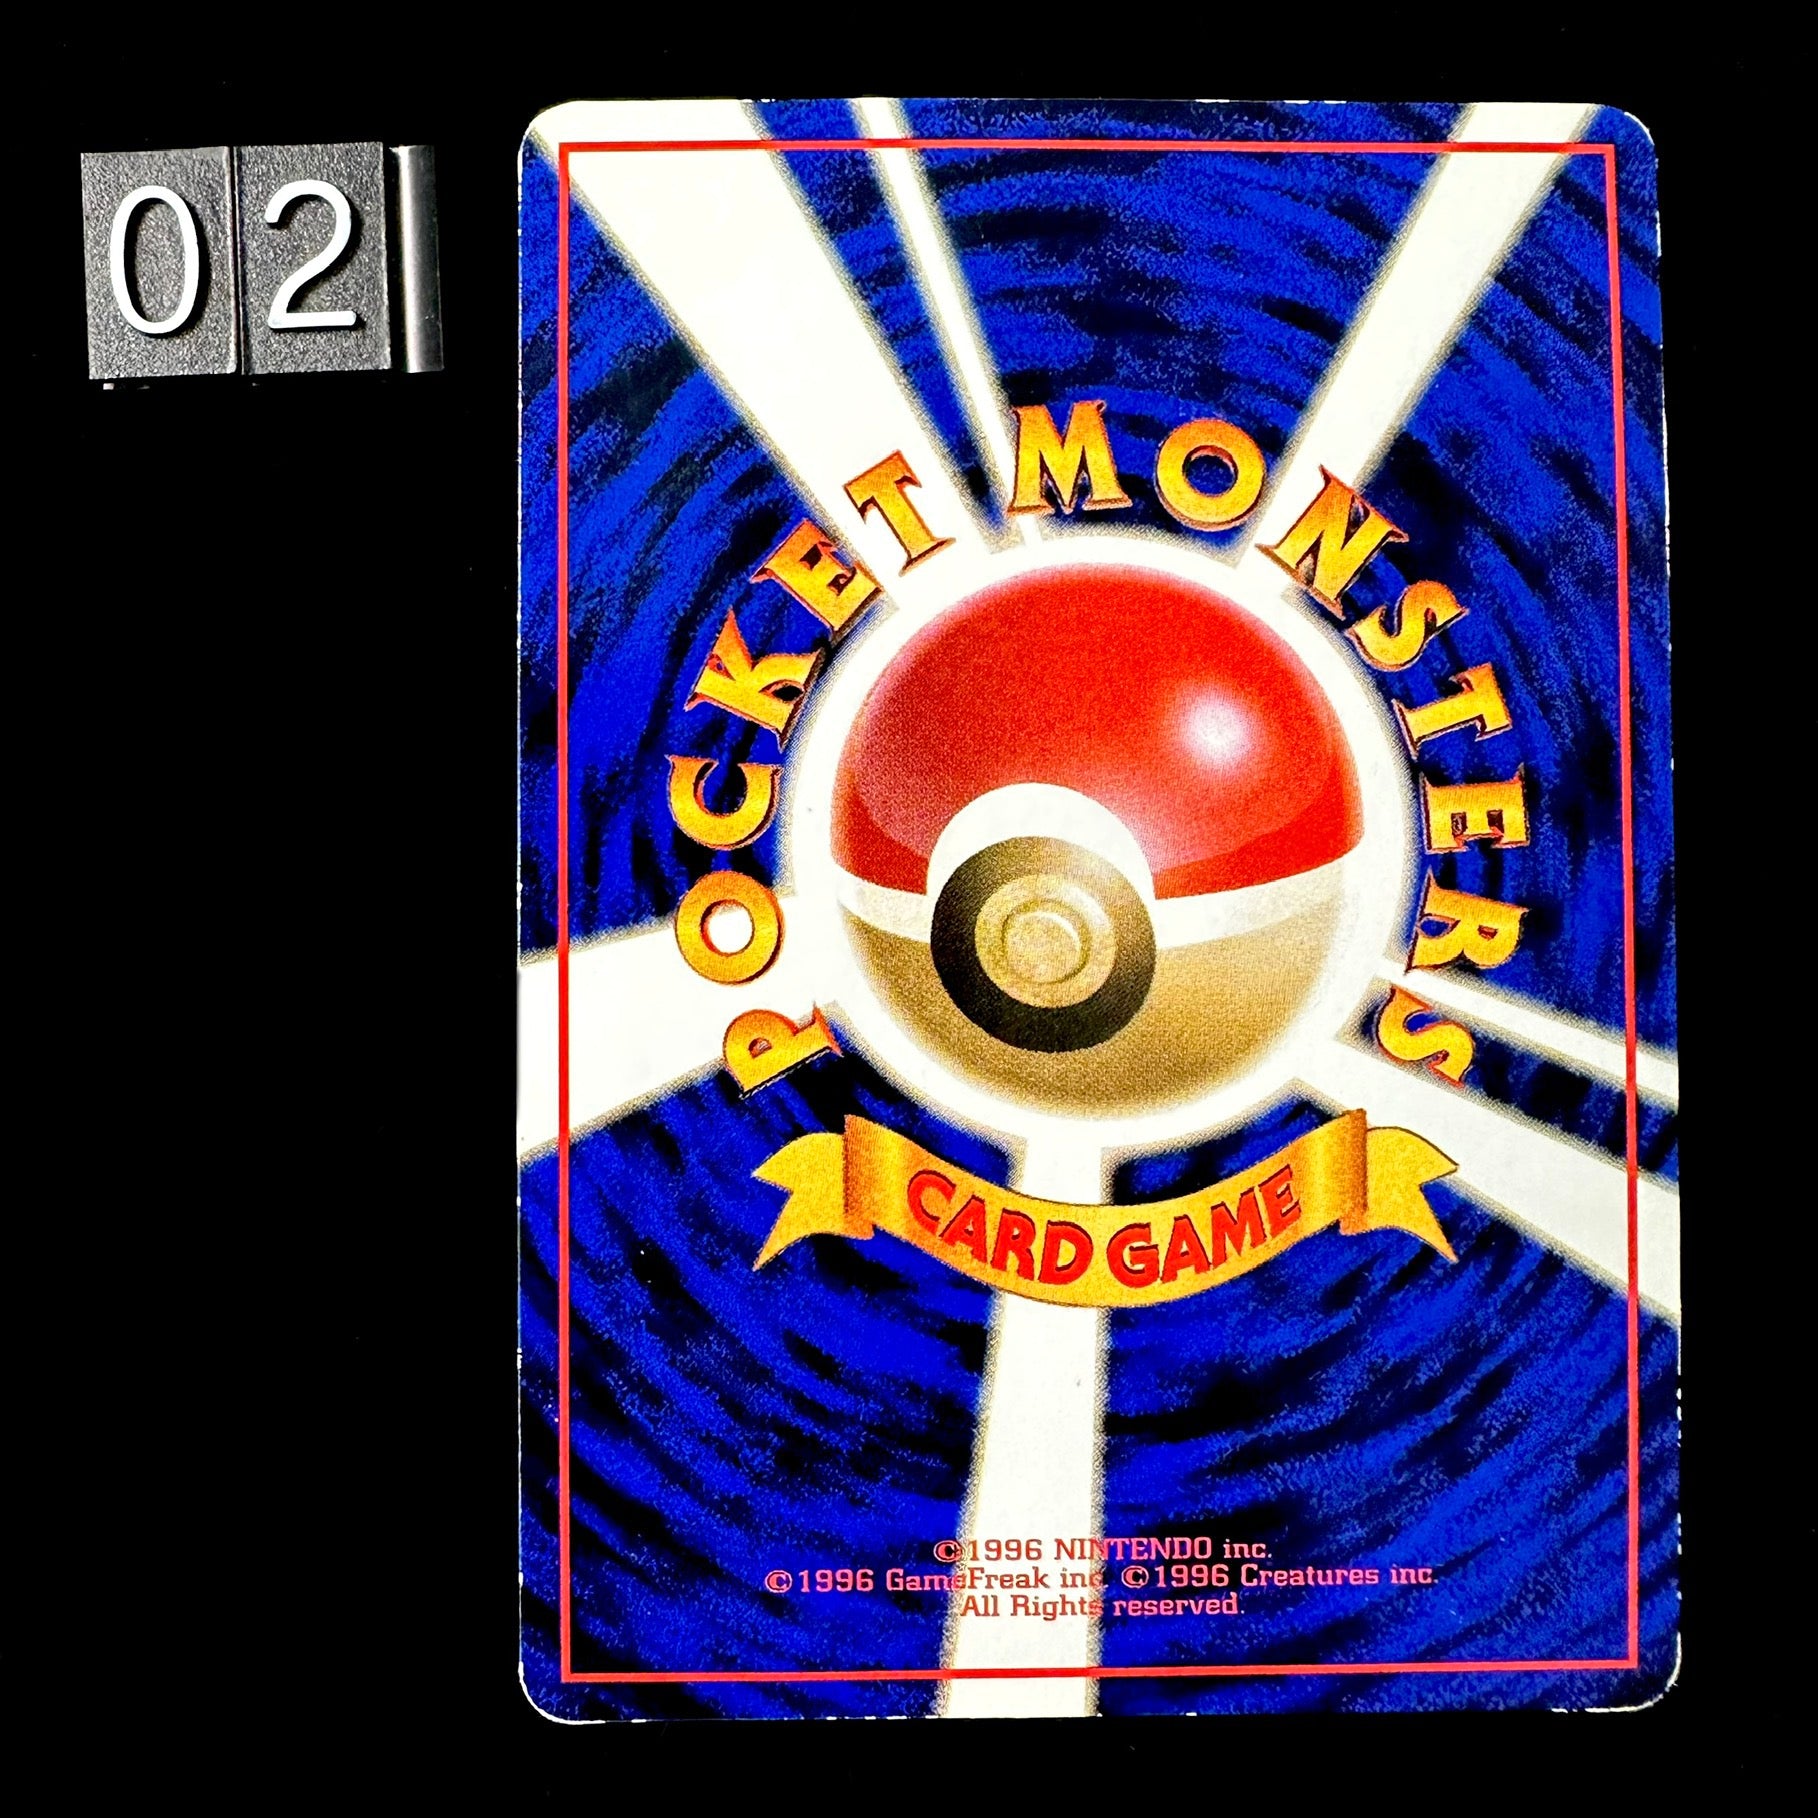 Pokémon Card Game Bulbasaur - Vending serie